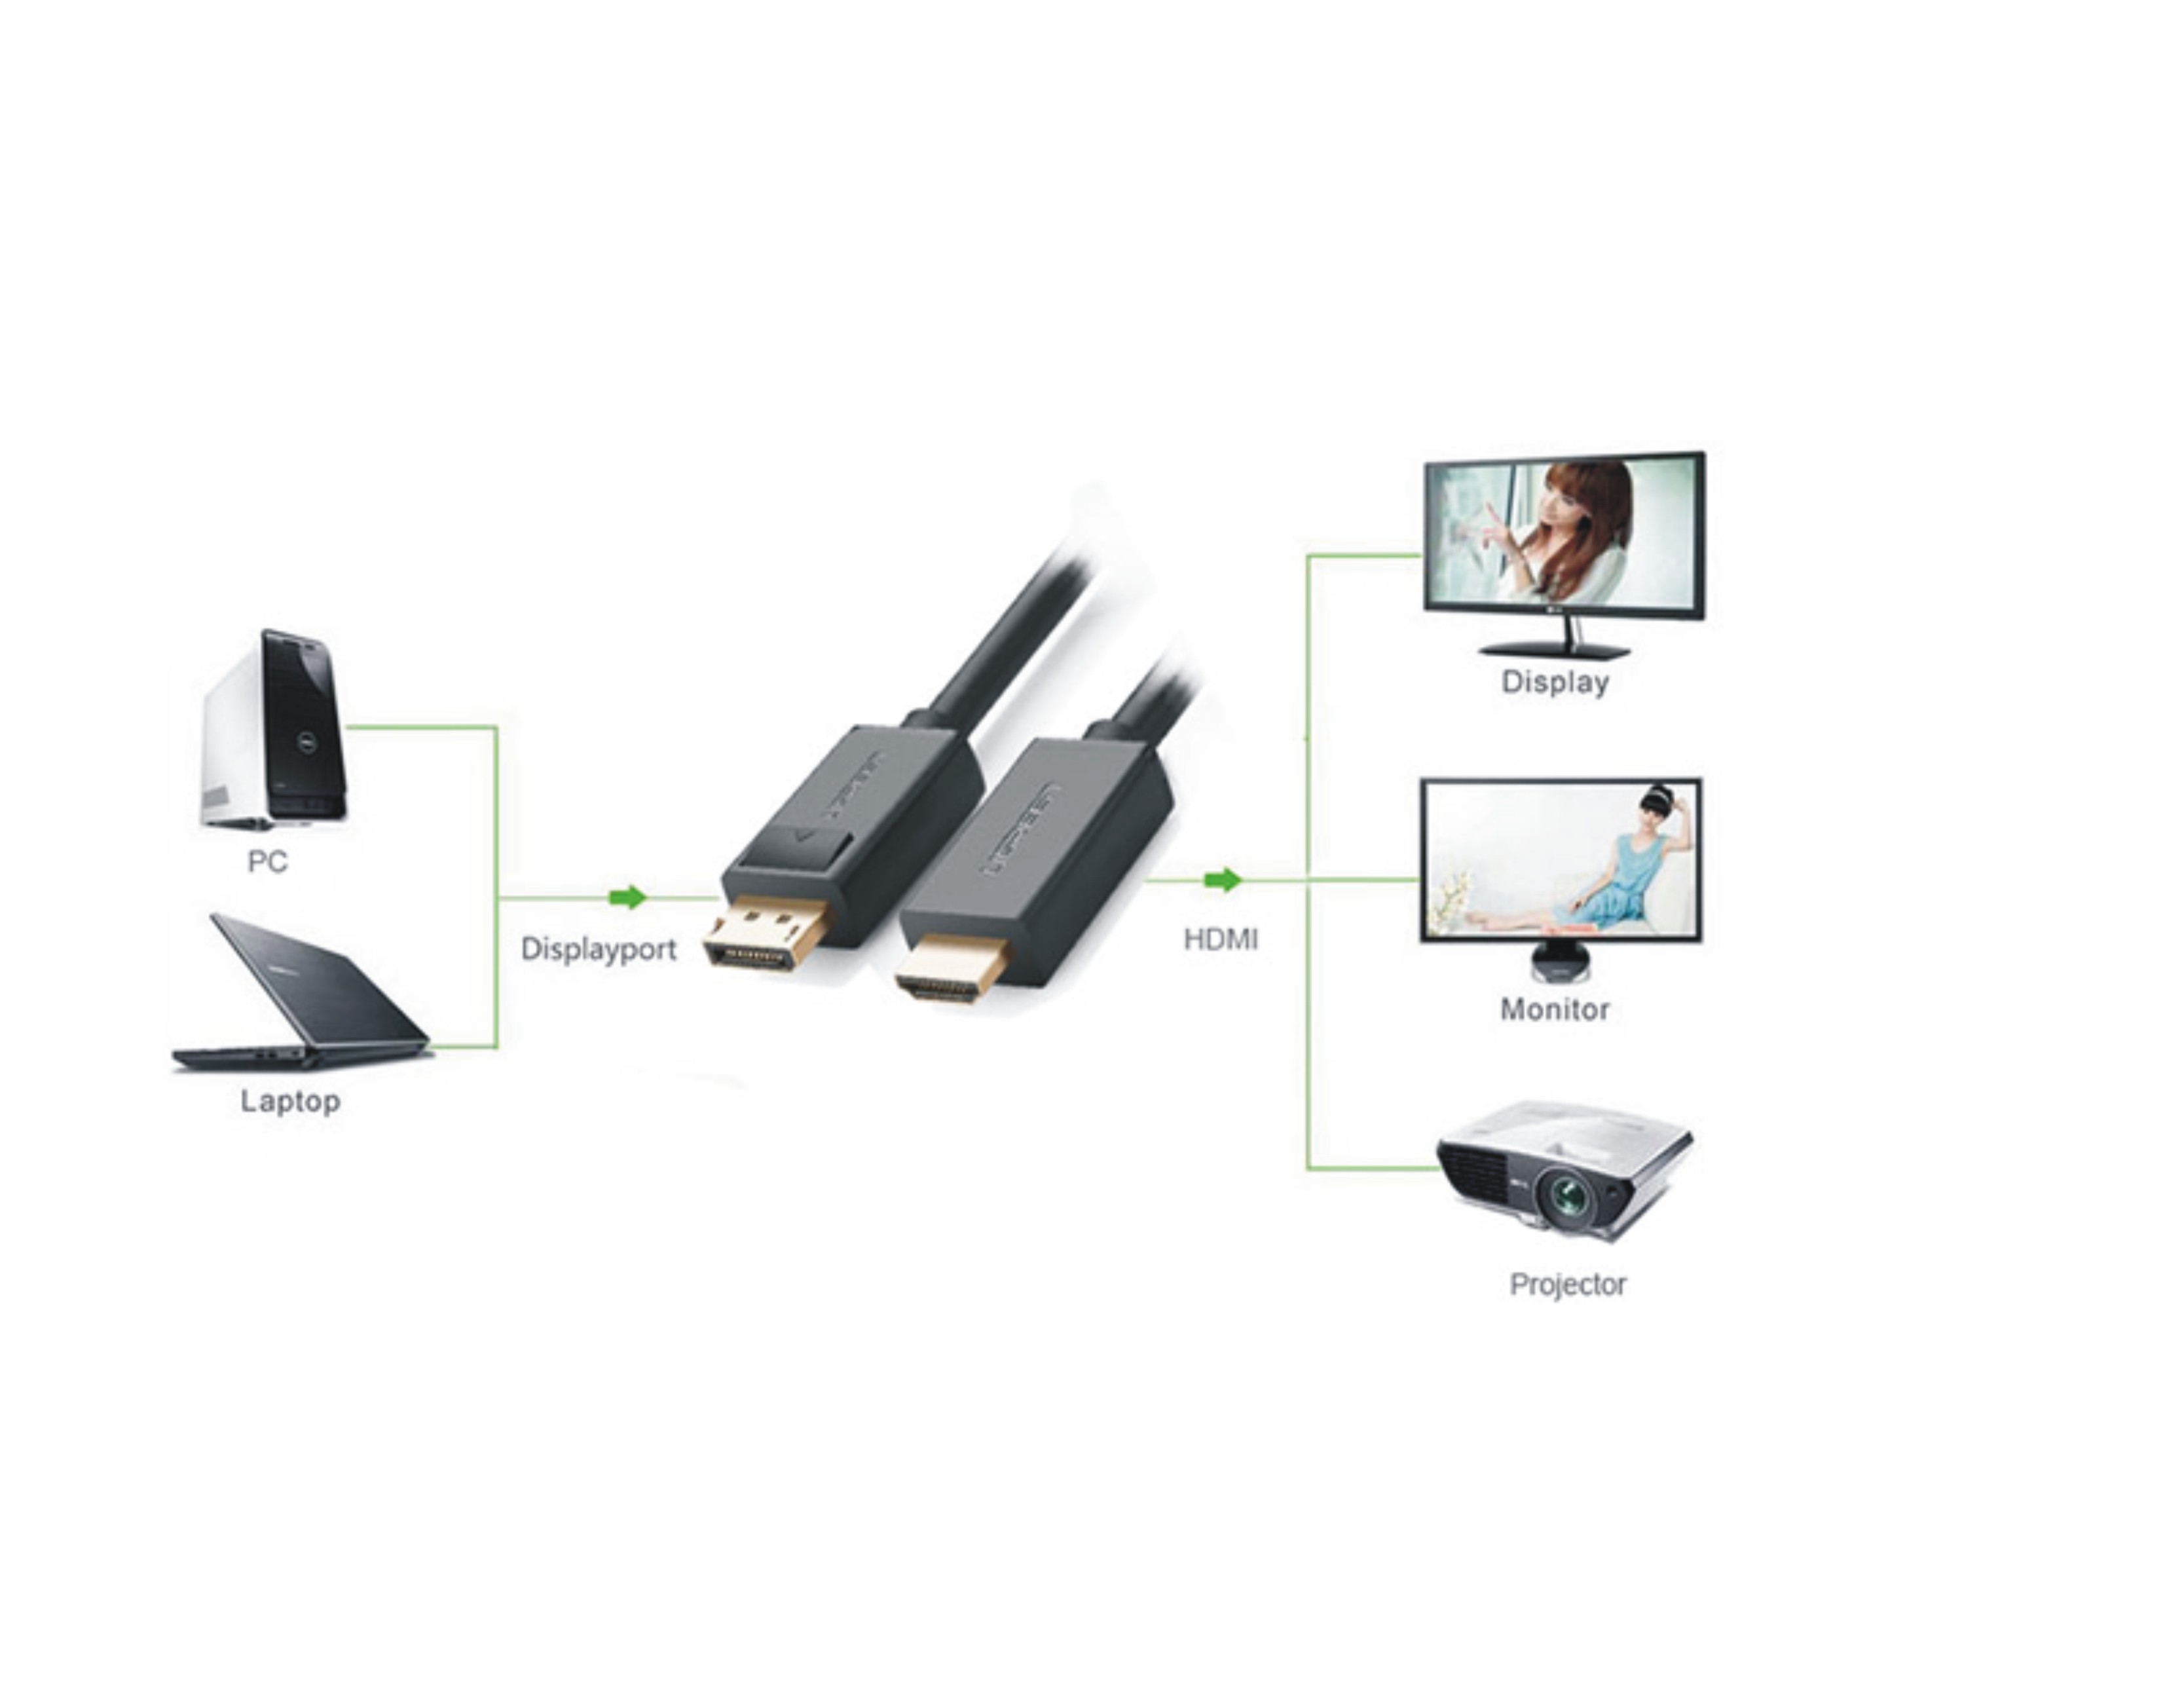 Cáp Chuyển Displayport Sang HDMI 1.5m Ugreen 10239 - Displayport To HDMI - Hàng CHính Hãng